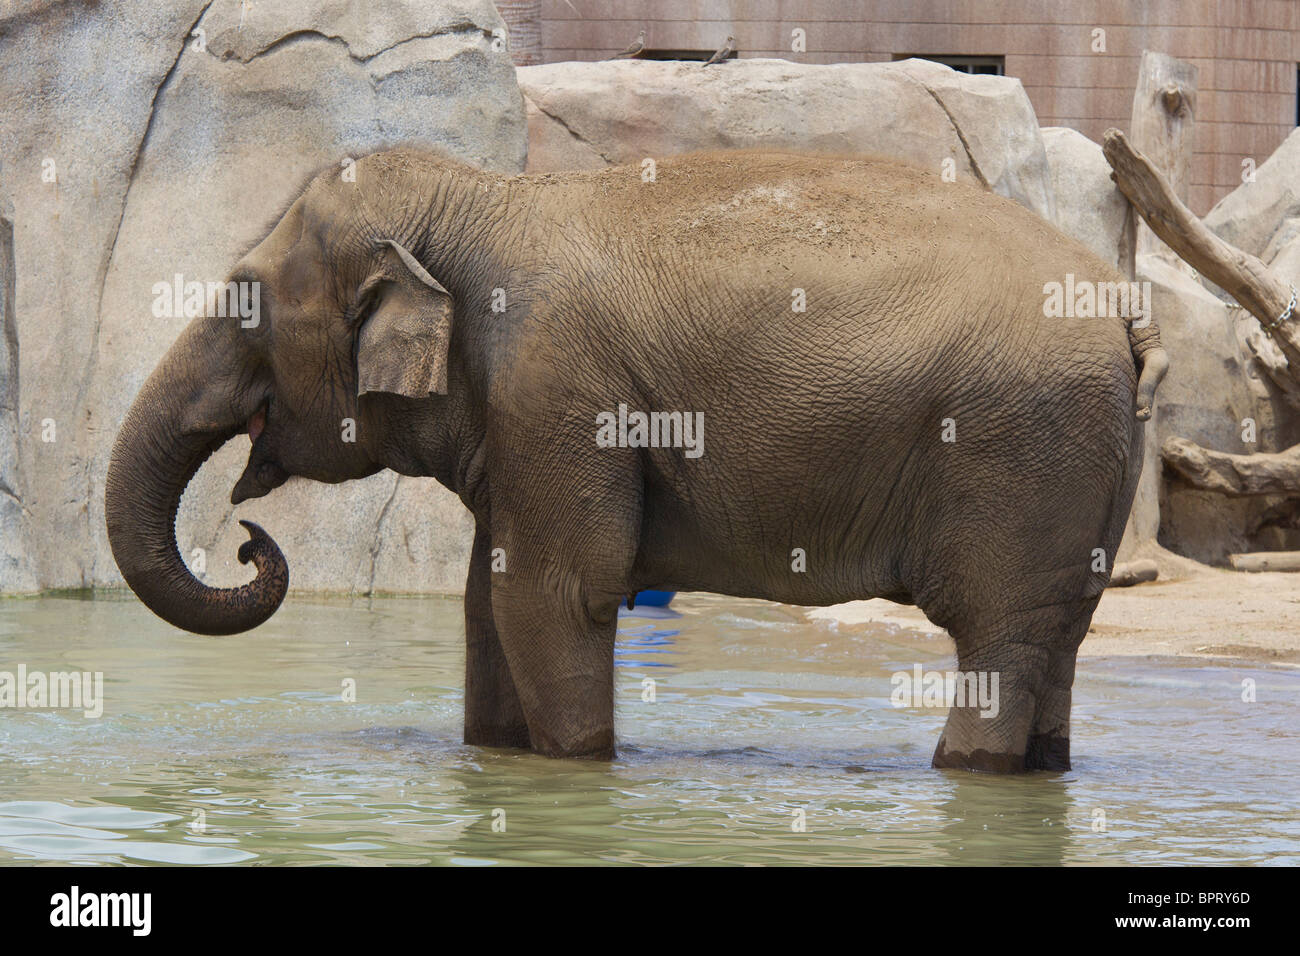 Un éléphant debout dans un bassin d'eau, Zoo de San Diego, San Diego, Californie, États-Unis d'Amérique Banque D'Images